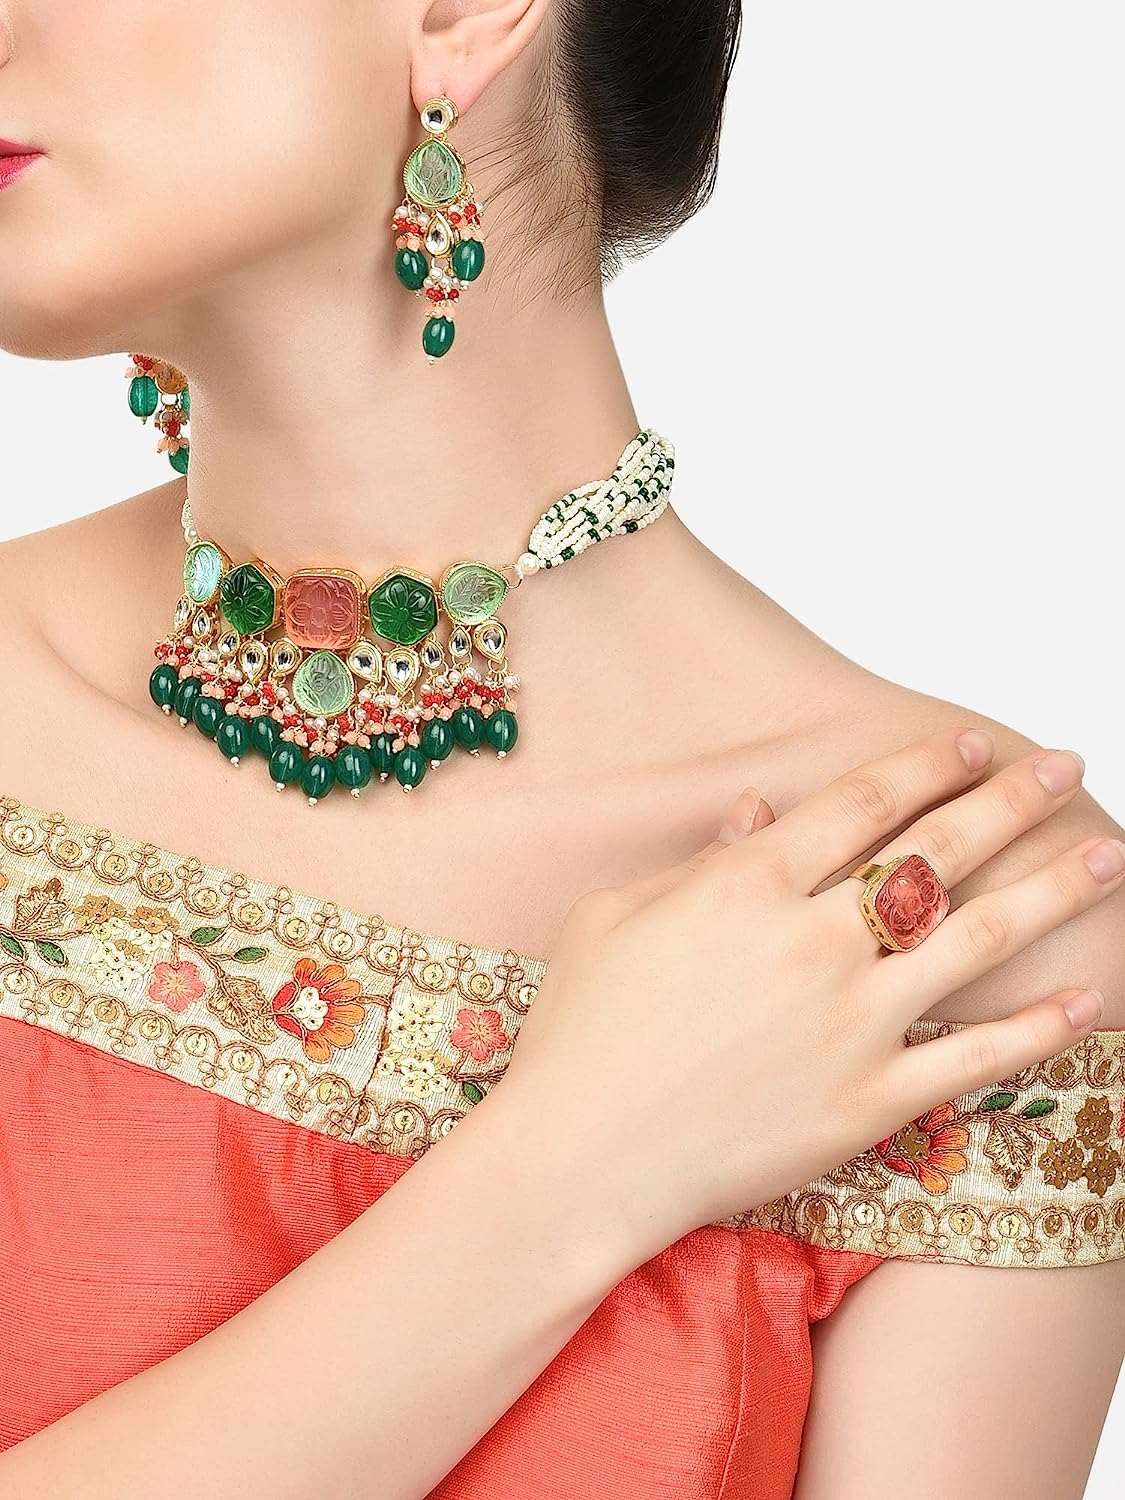 Multicolor Stones & Beads Multistrand Beaded Kundan Choker Necklace Earring & Ring Set For Women